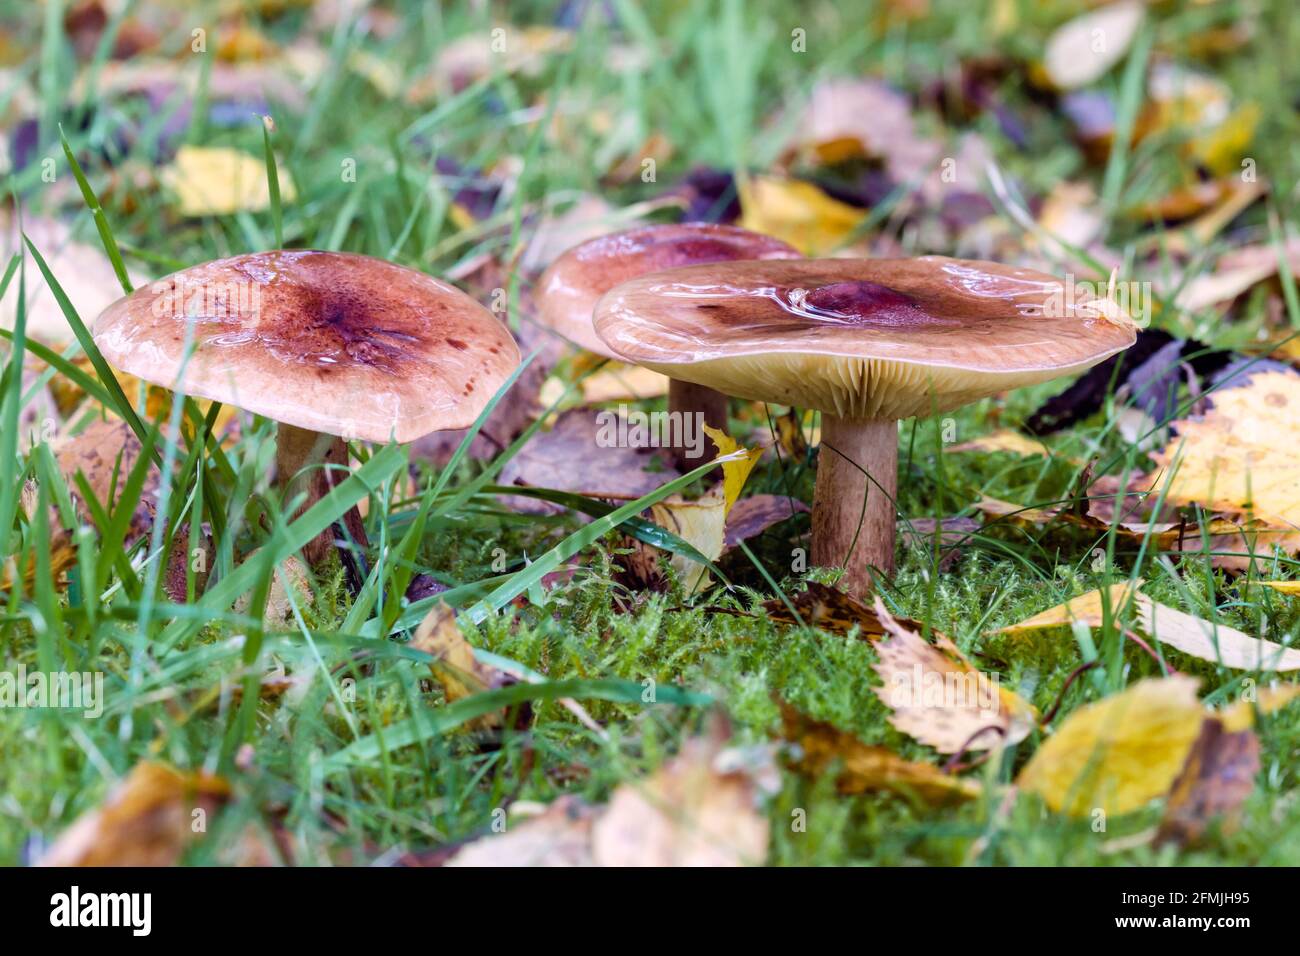 Herald di fungo invernale Hygroforus hypothejus che cresce su erba in Le Highlands della Scozia Foto Stock